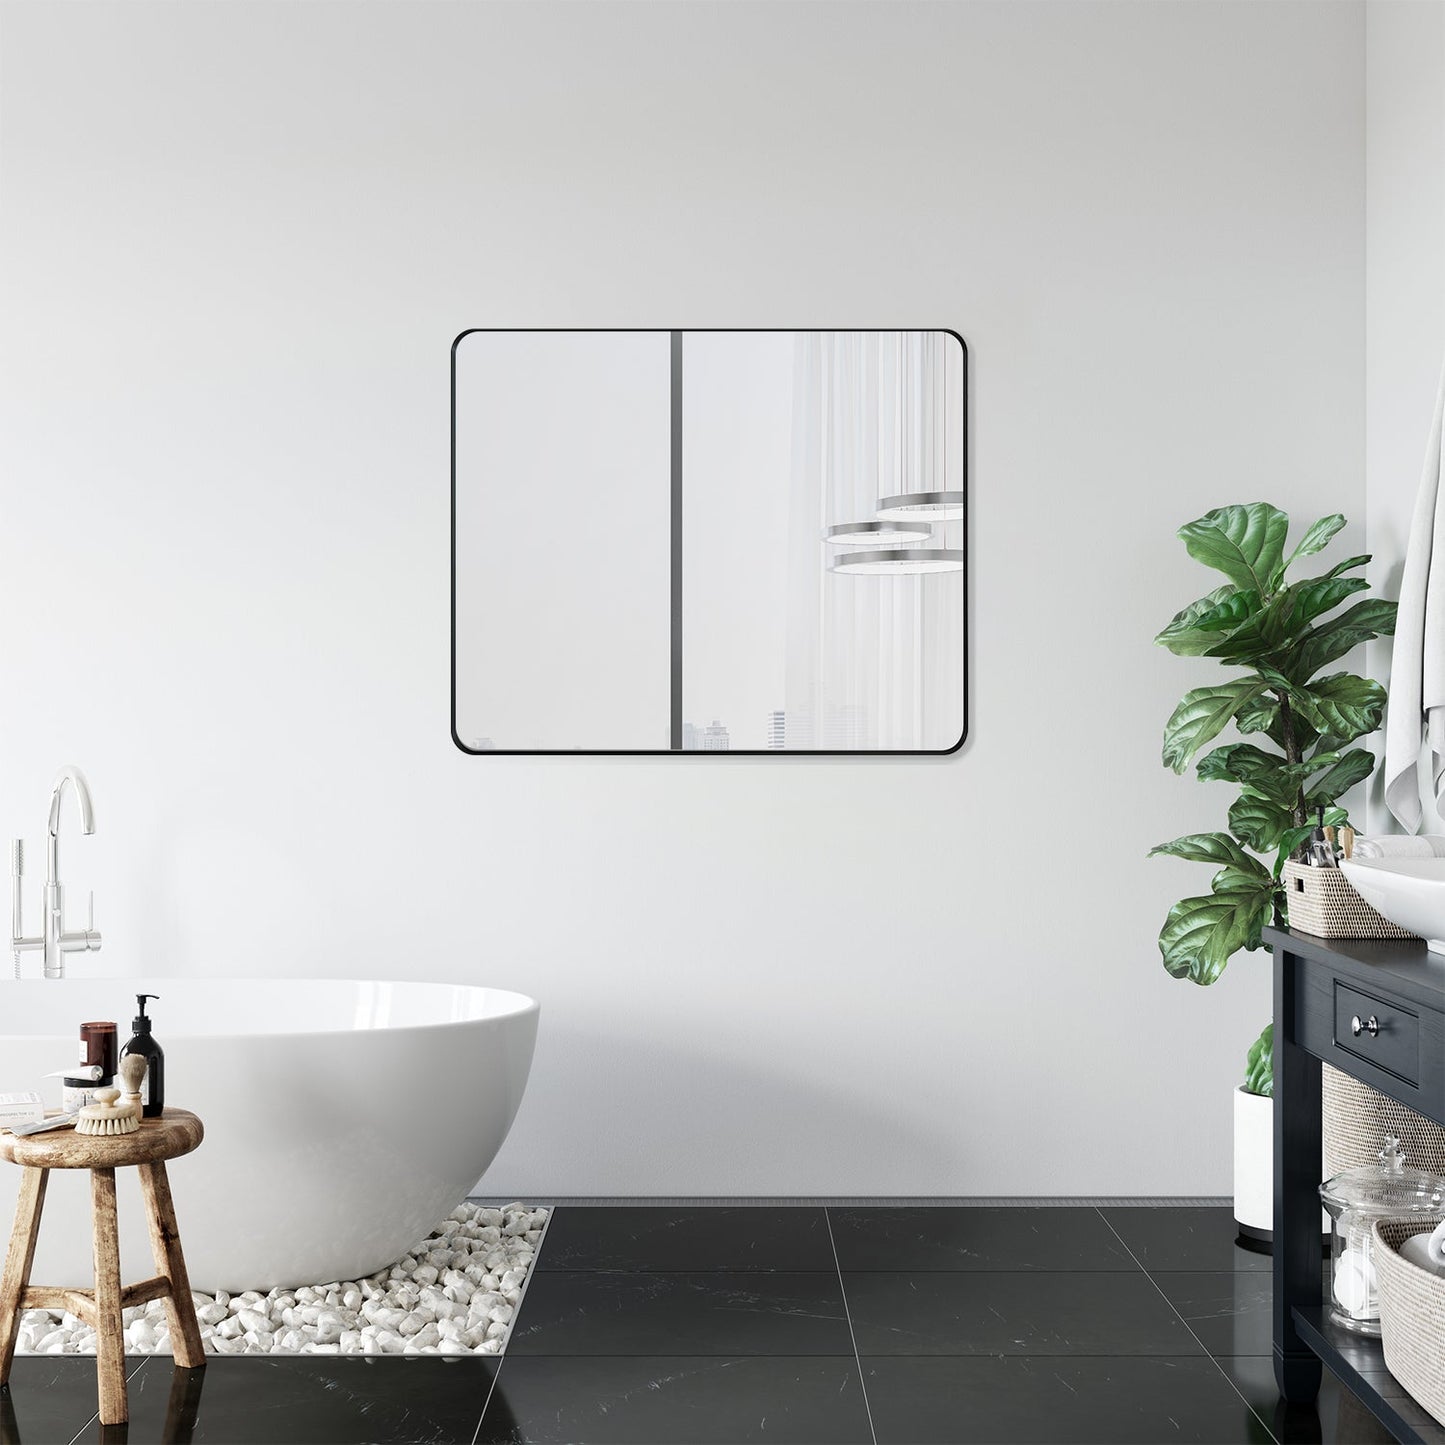 Nettuno 36" Rectangle Bathroom/Vanity Matt Black Aluminum Framed Wall Mirror